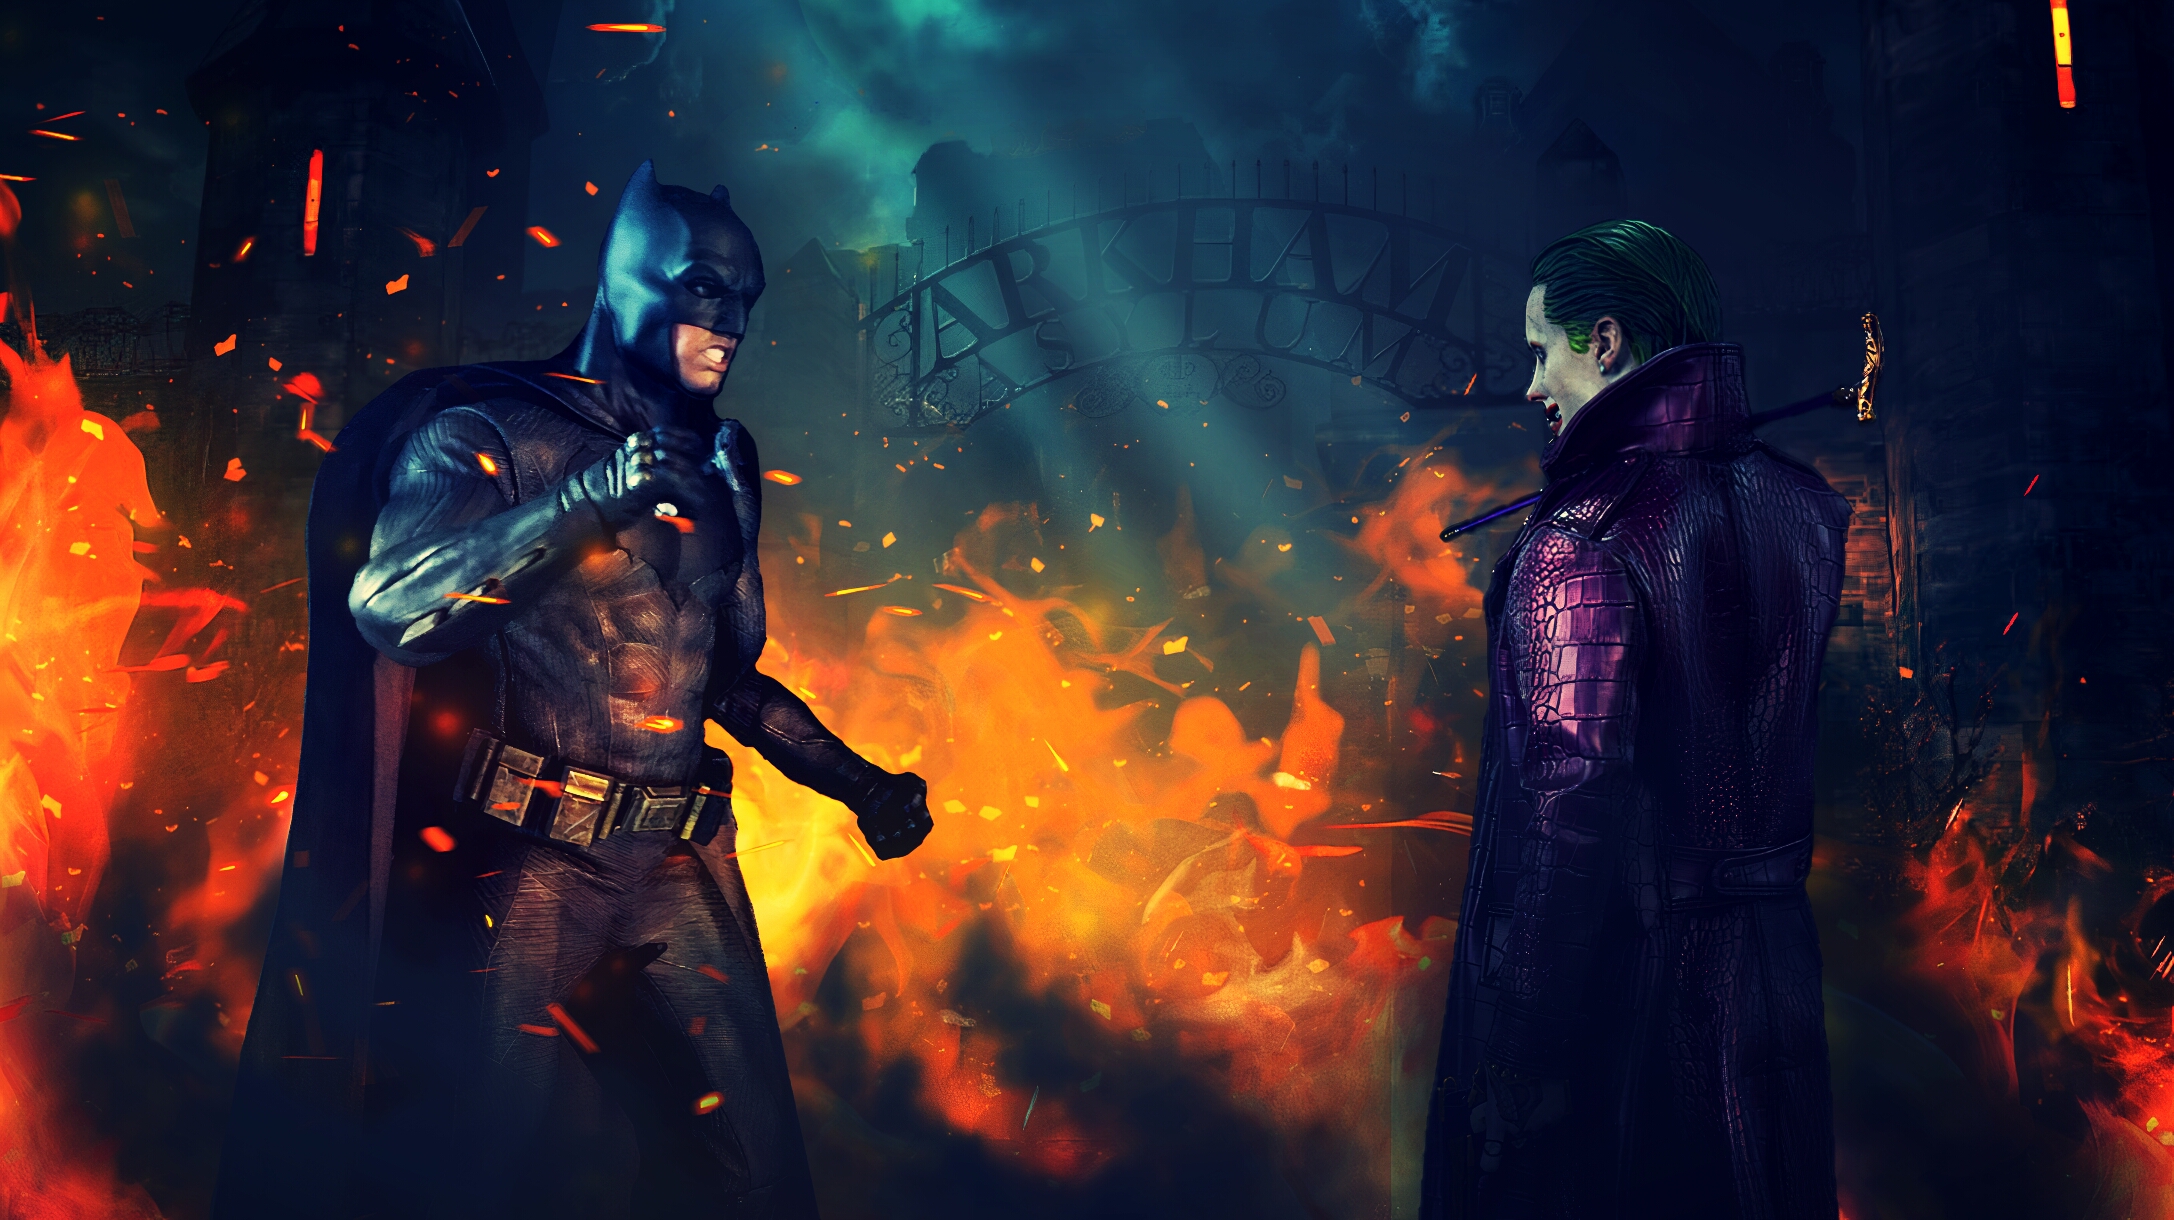 Batman vs Joker at Arkham Asylum by Kubado515 on DeviantArt